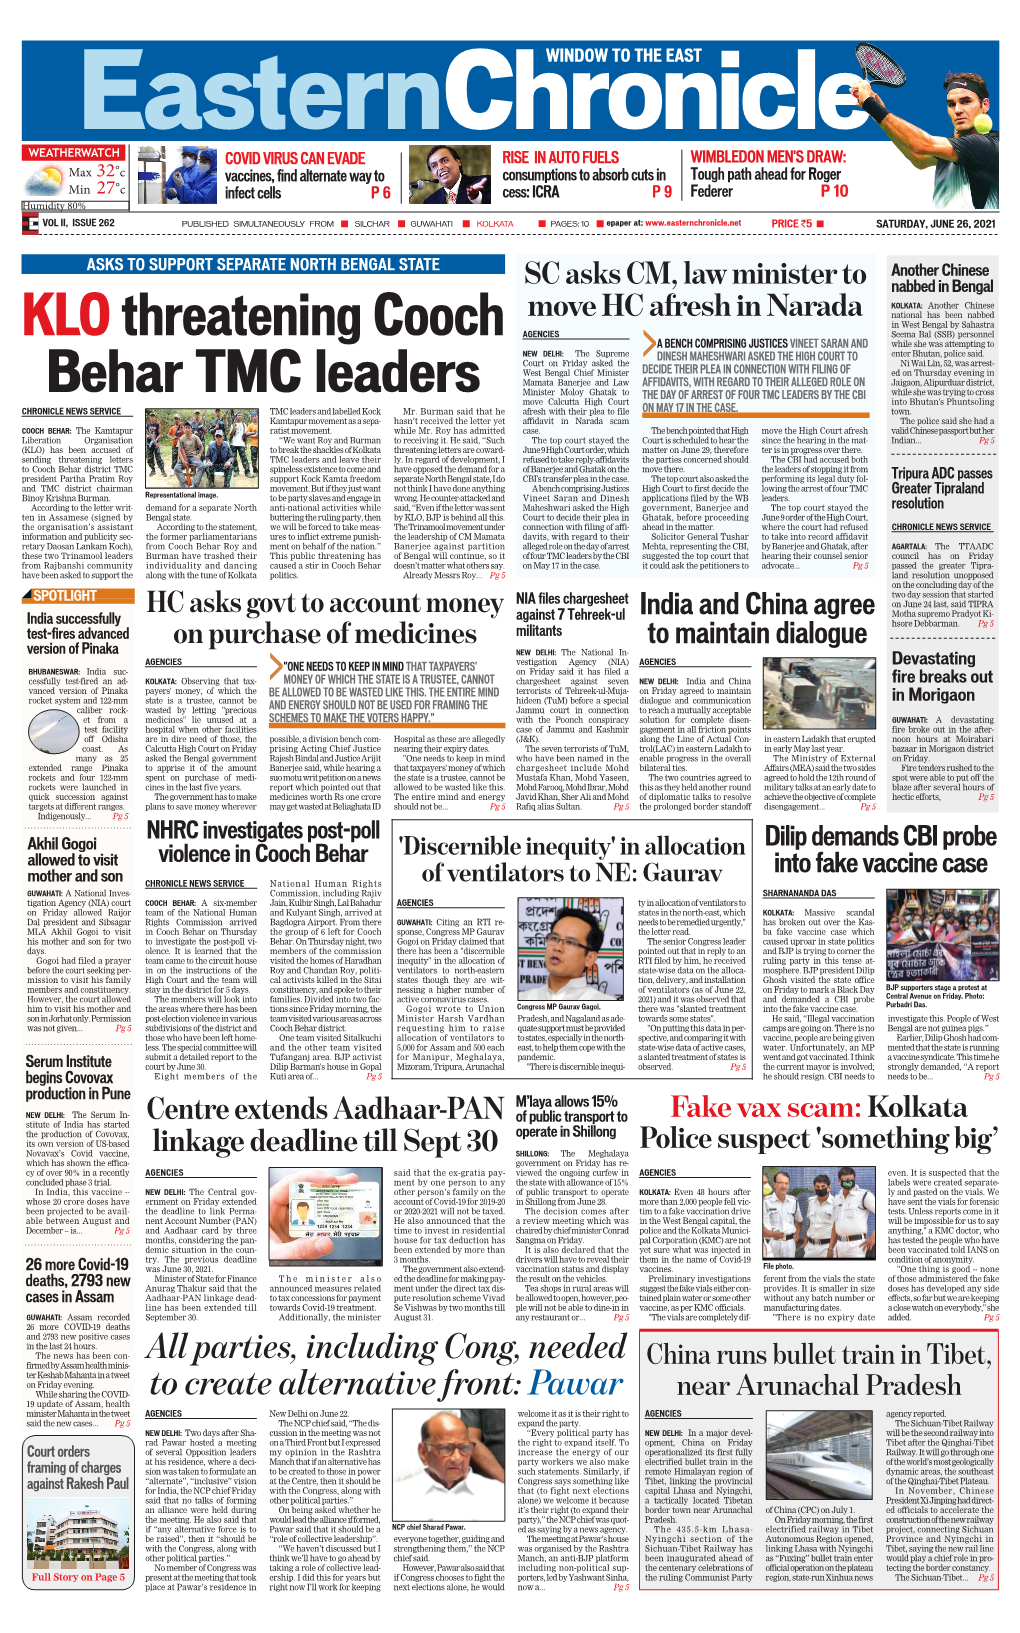 Klothreatening Cooch Behar TMC Leaders